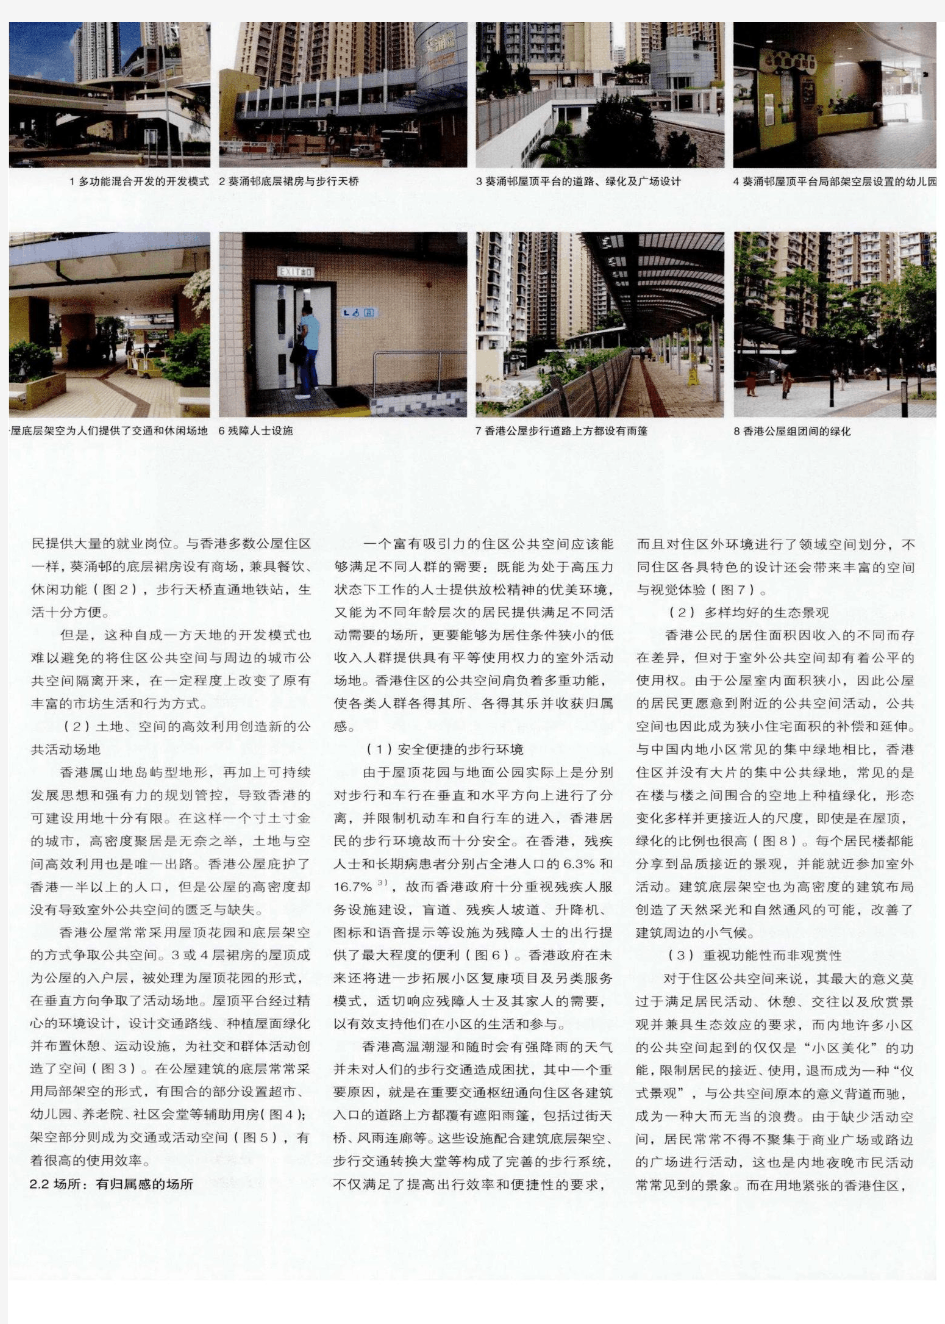 日常生活视角下的住区外部公共空间——借鉴香港公屋外部公共空间设计